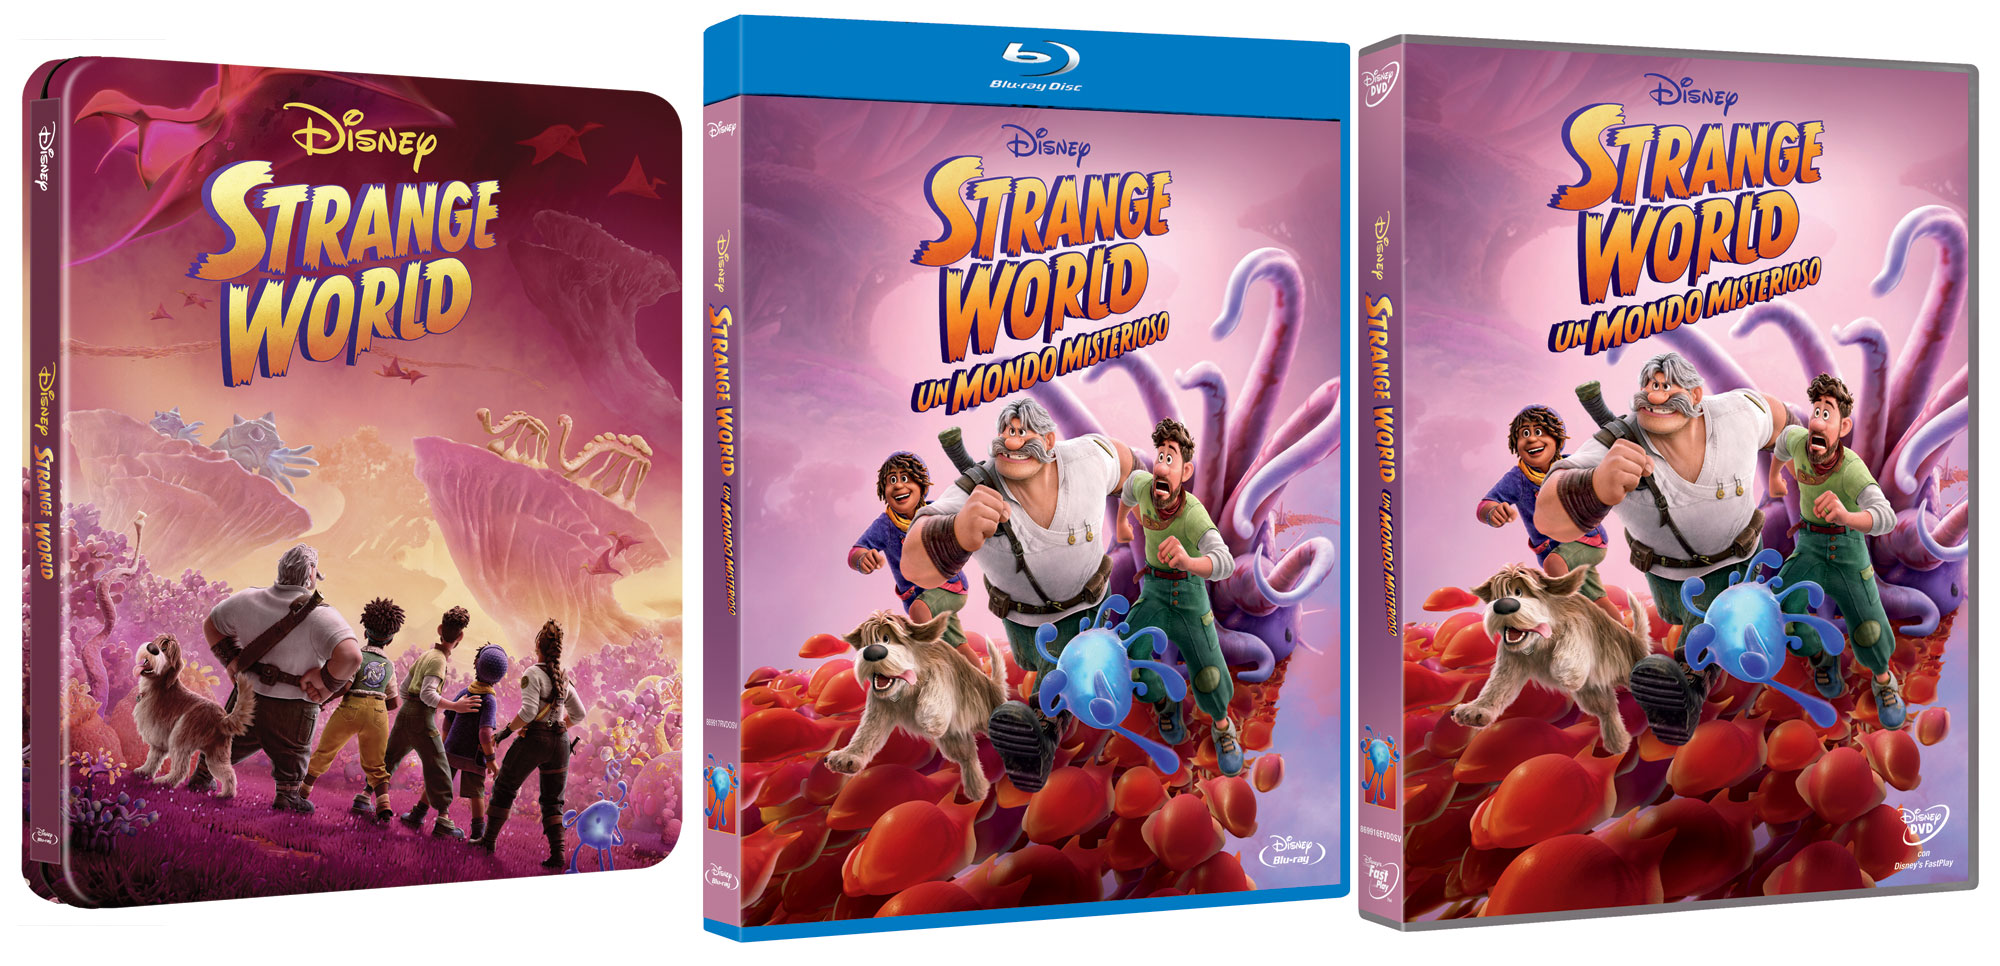 Strange World - Un Mondo Misterioso in DVD, Blu-ray e Steelbook